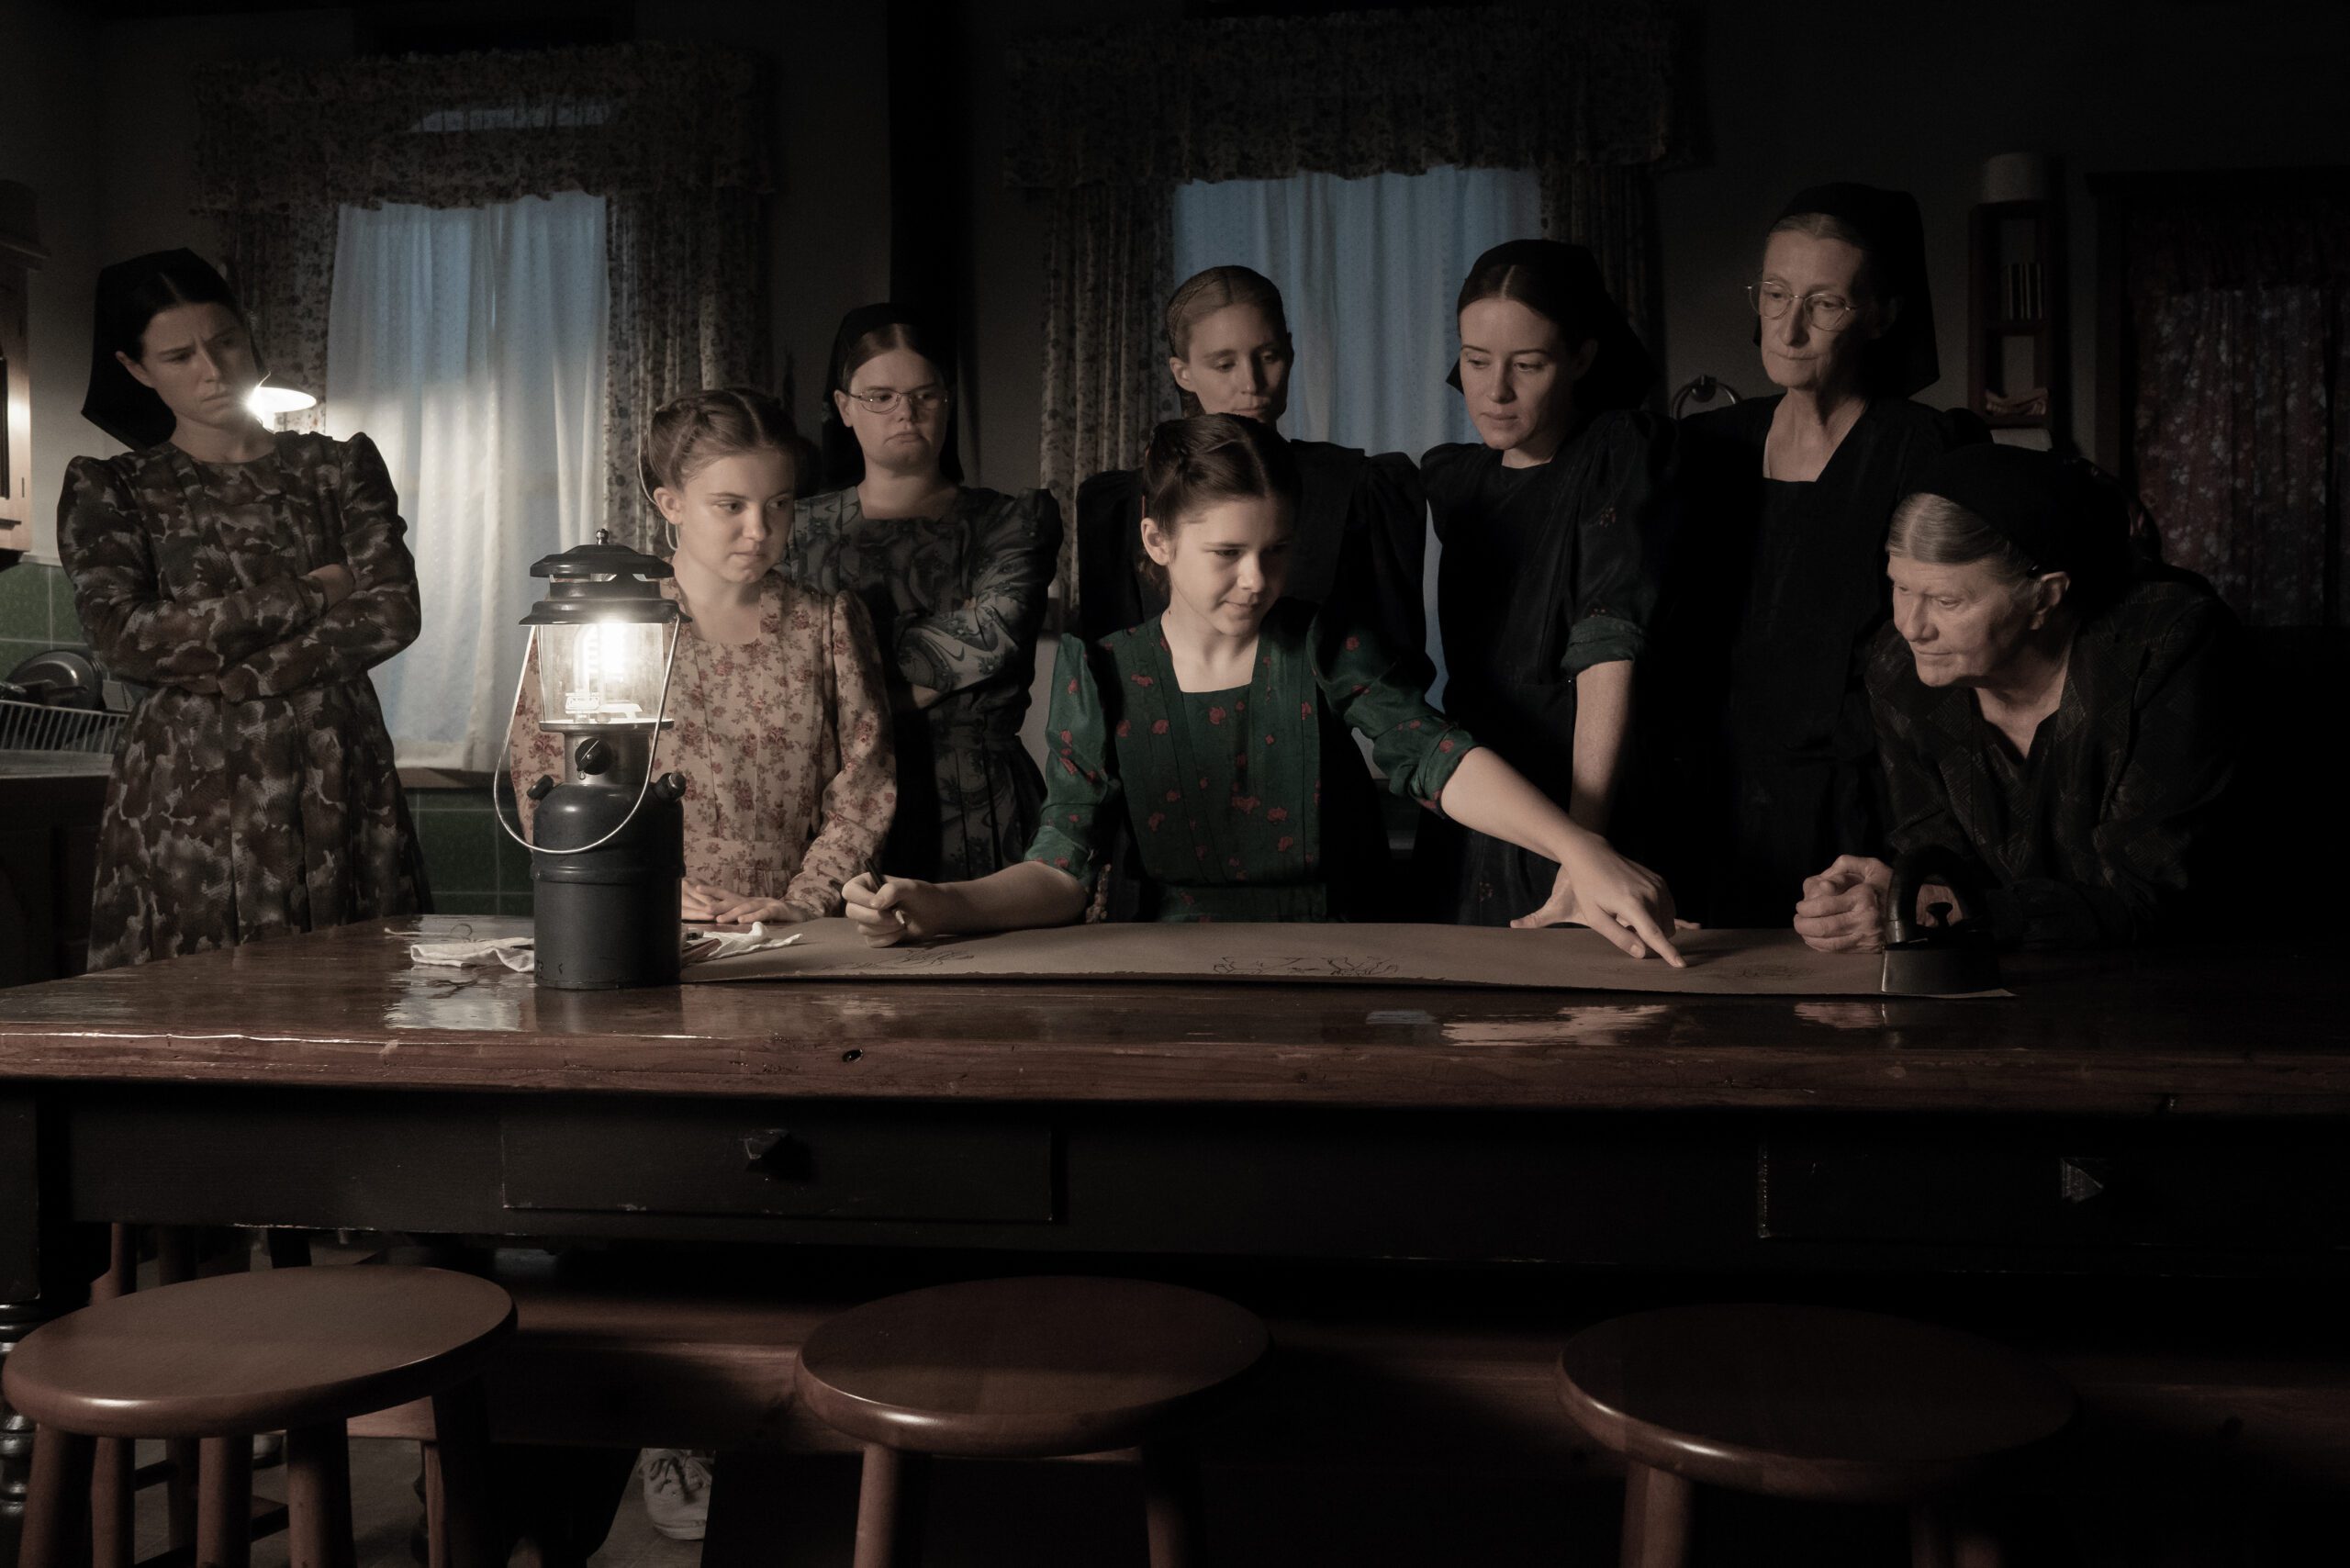 Un gruppo di donne attorno ad un tavolo